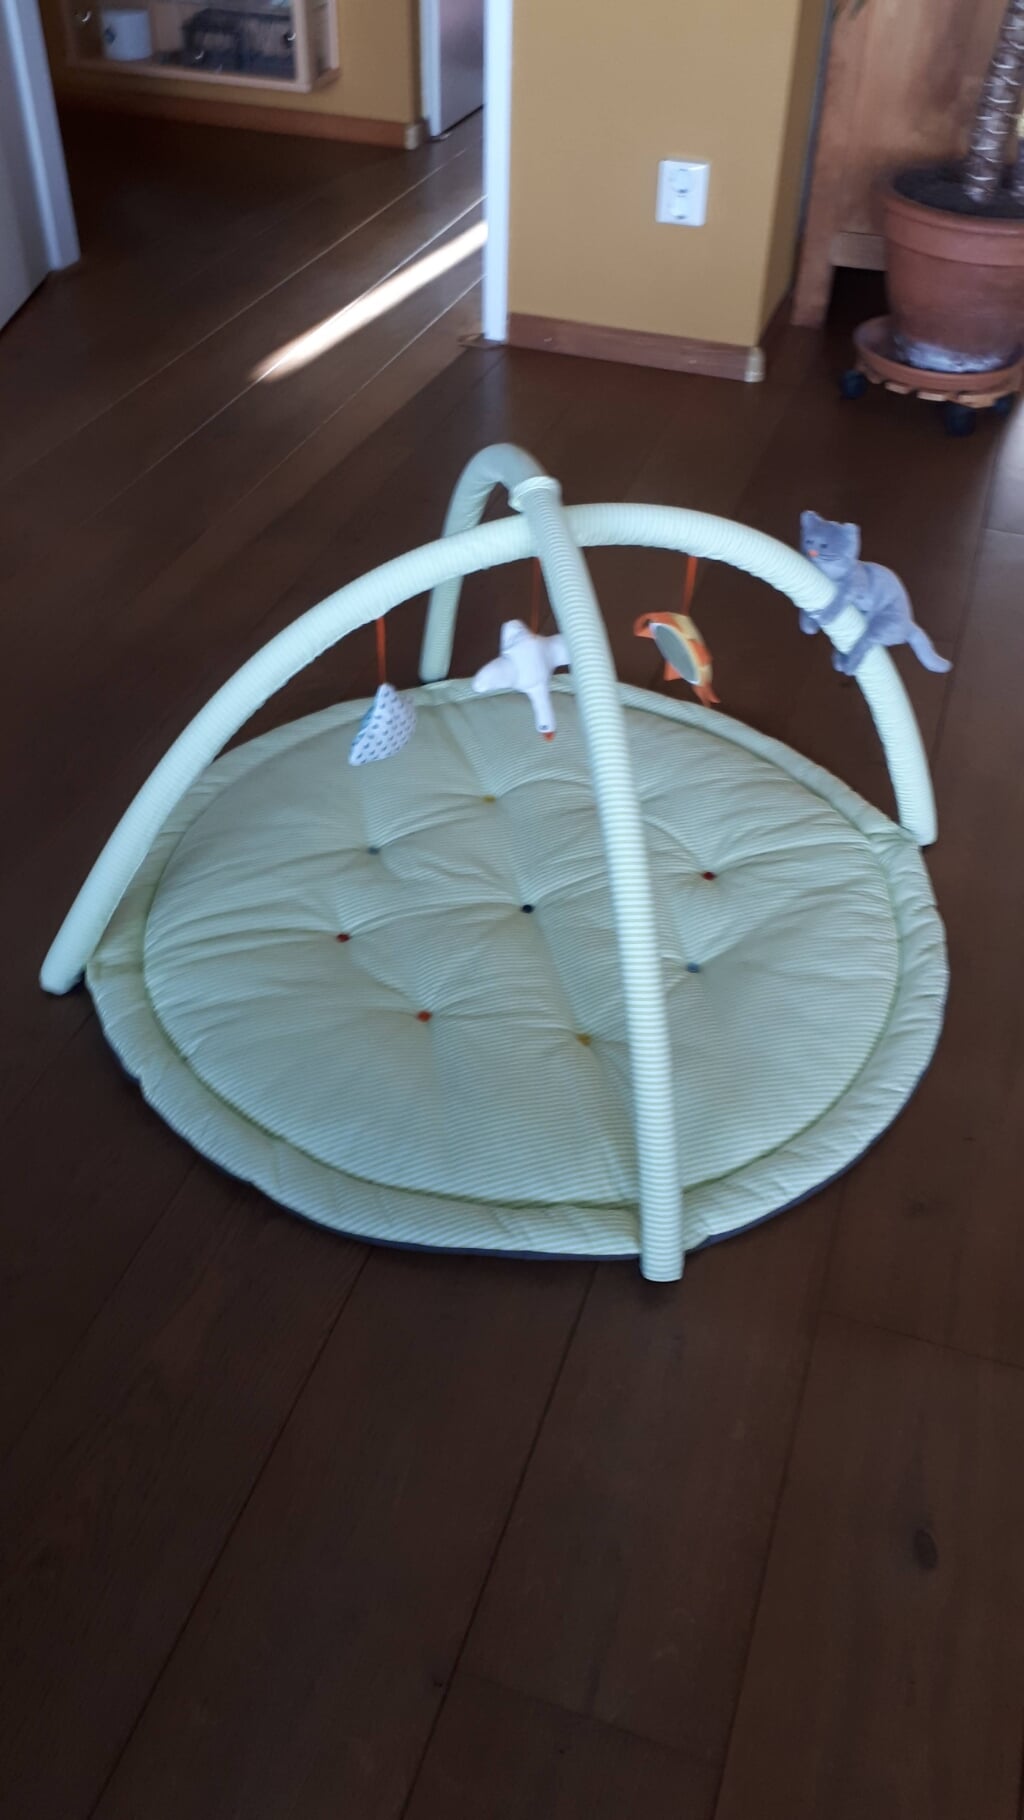 Baby trapeze met kleed eronder .Ikea